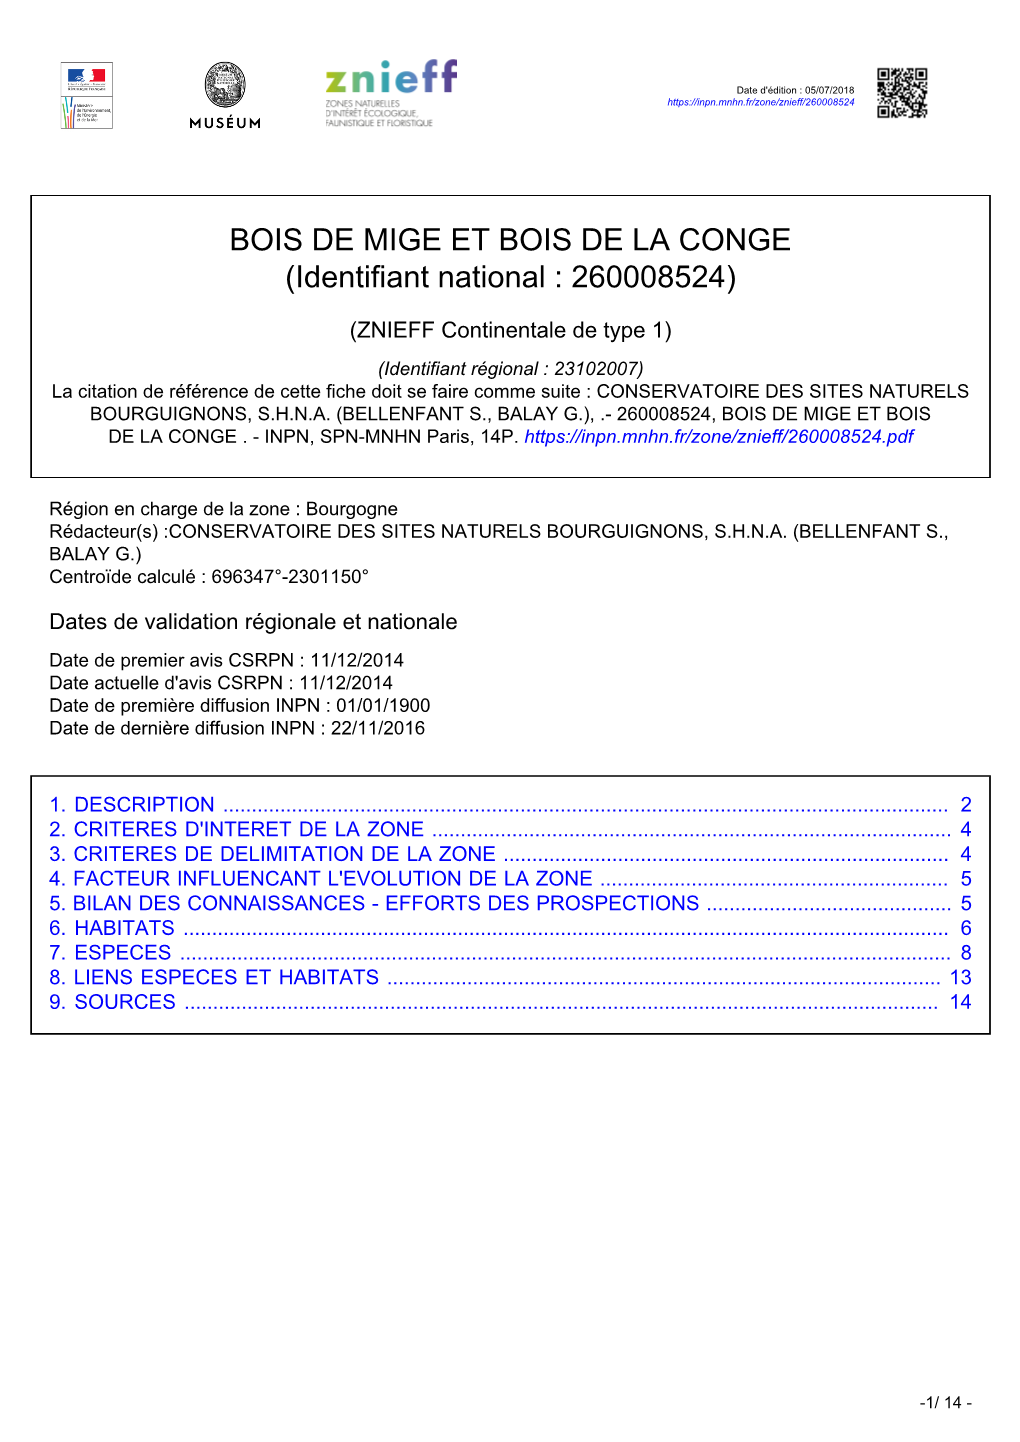 BOIS DE MIGE ET BOIS DE LA CONGE (Identifiant National : 260008524)